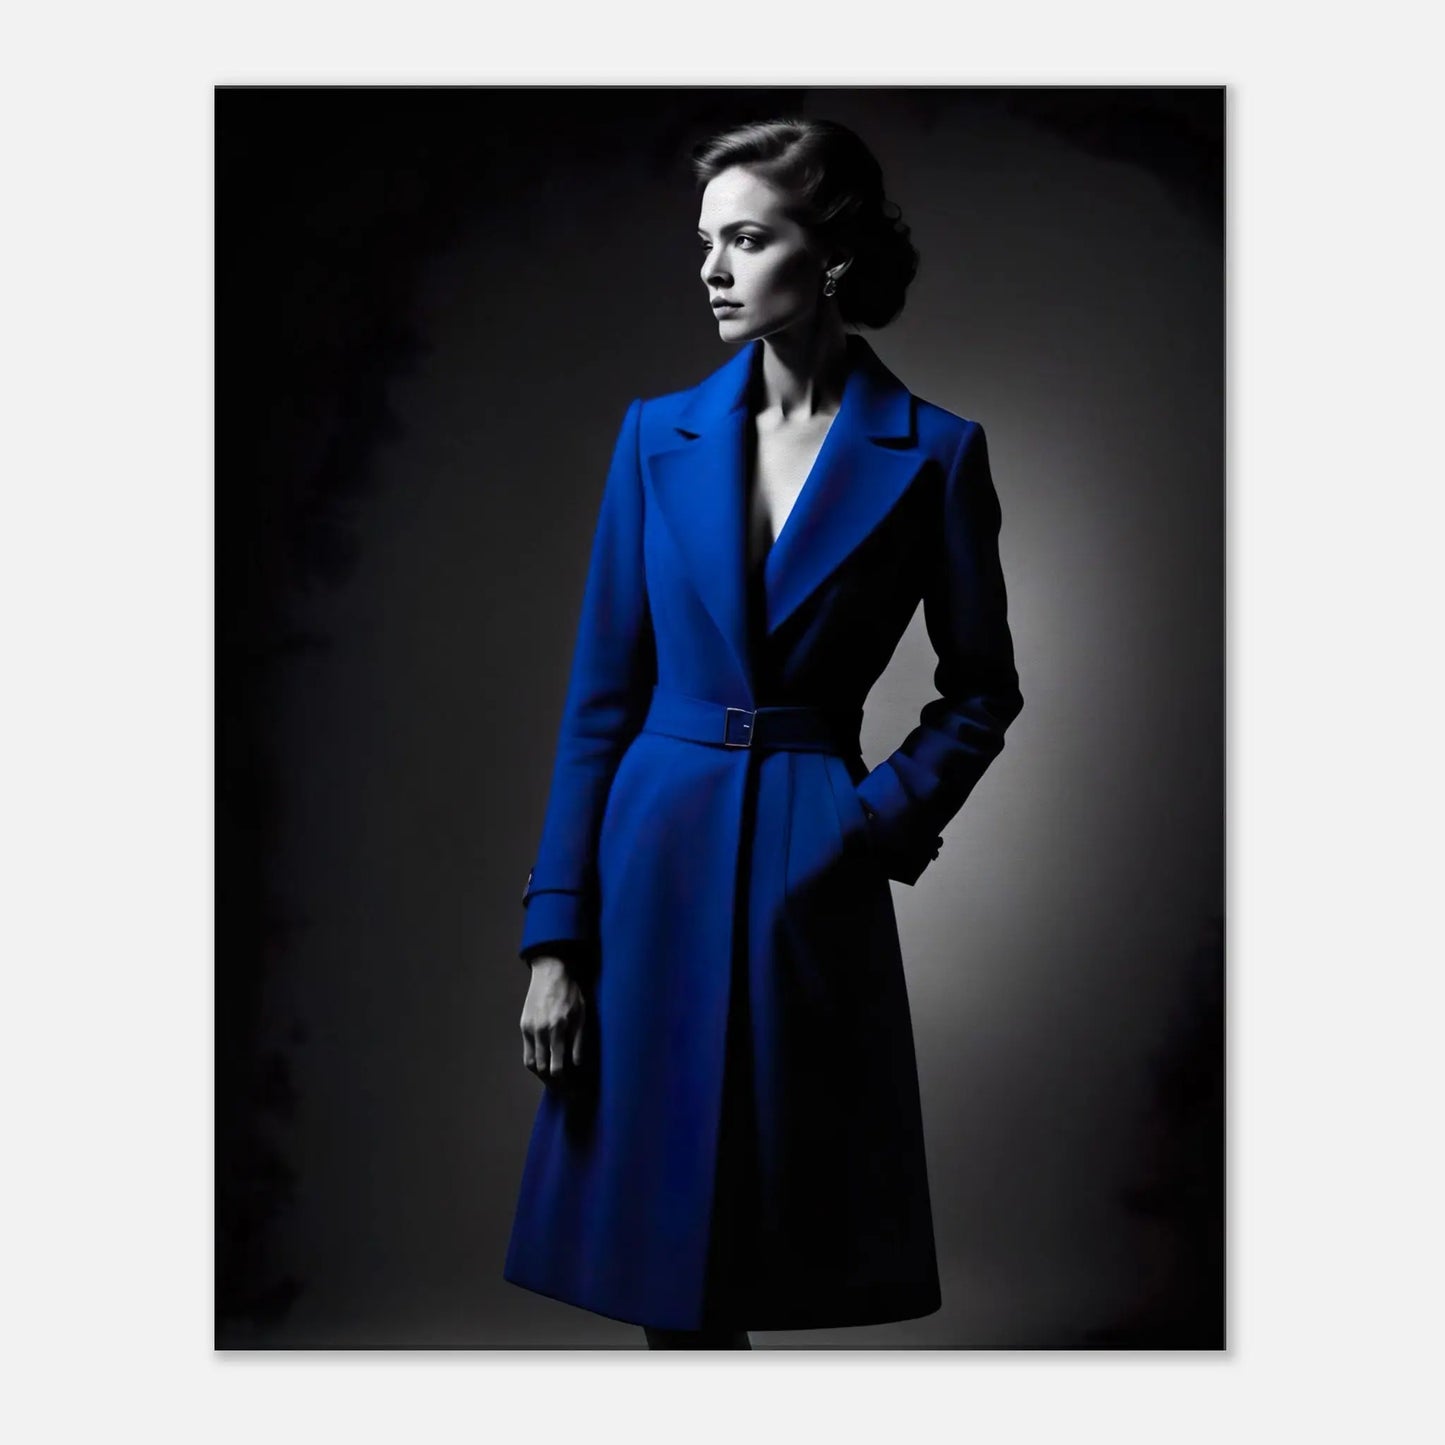 Leinwandbild - Frau im blauen Mantel - Schwarz-Weiß Stil, KI-Kunst - RolConArt, Schwarz-Weiß mit Akzentfarben, 60x75-cm-24x30